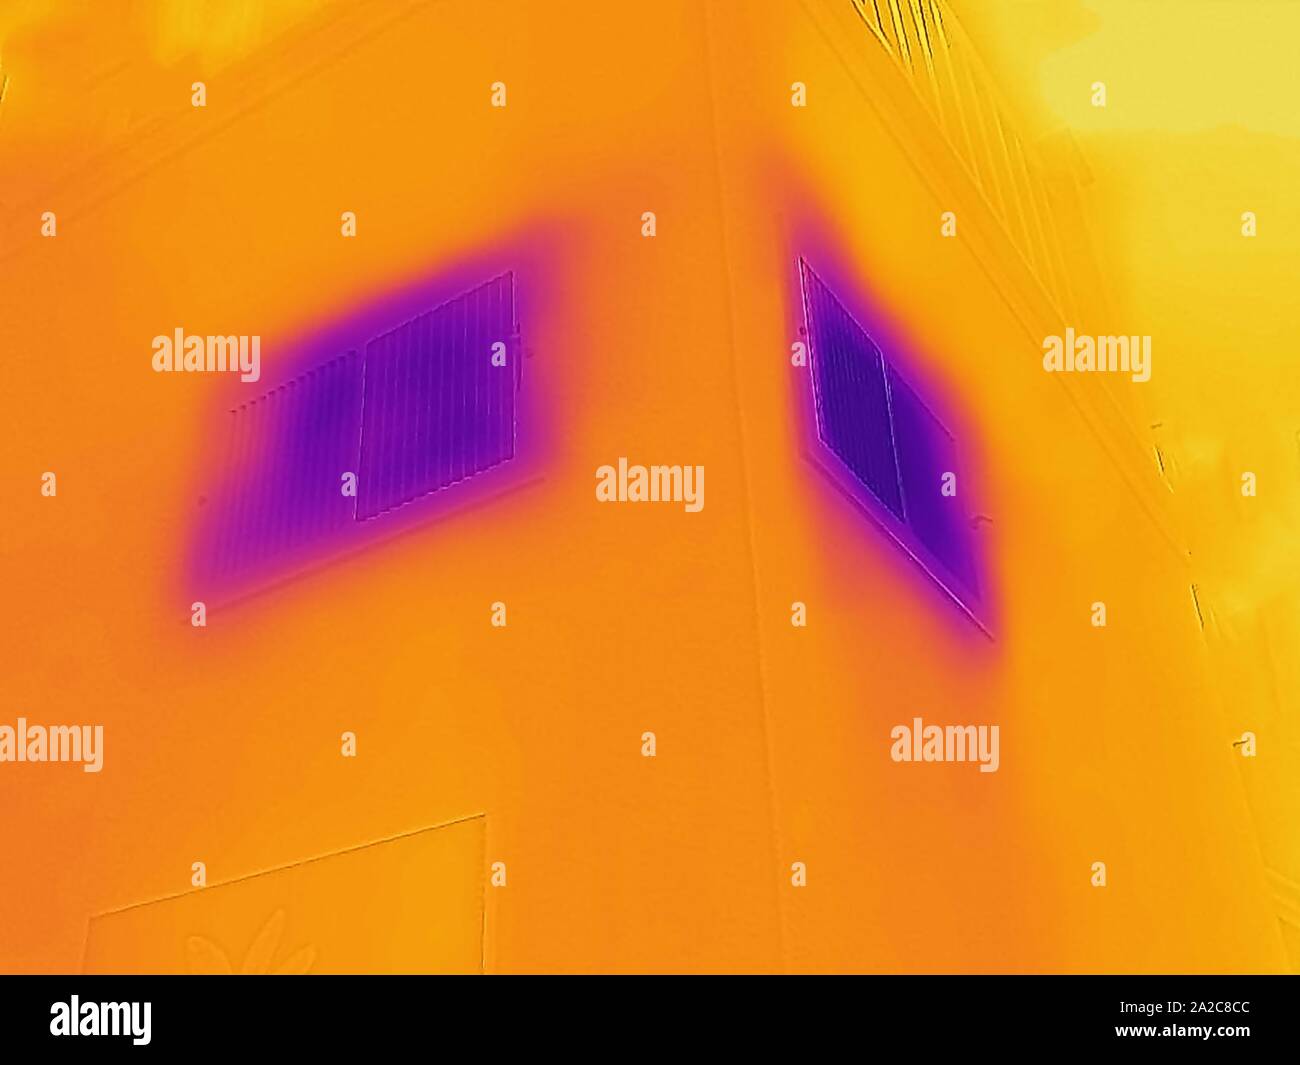 Image thermographique de caméra thermique, avec zones lumineuses correspondant à des températures plus élevées, montrant de l'air froid produit par l'unité de climatisation HVAC domestique, à deux aérations ou registres de climatisation dans une salle domestique, San Ramon, Californie, 2 septembre 2019. () Banque D'Images